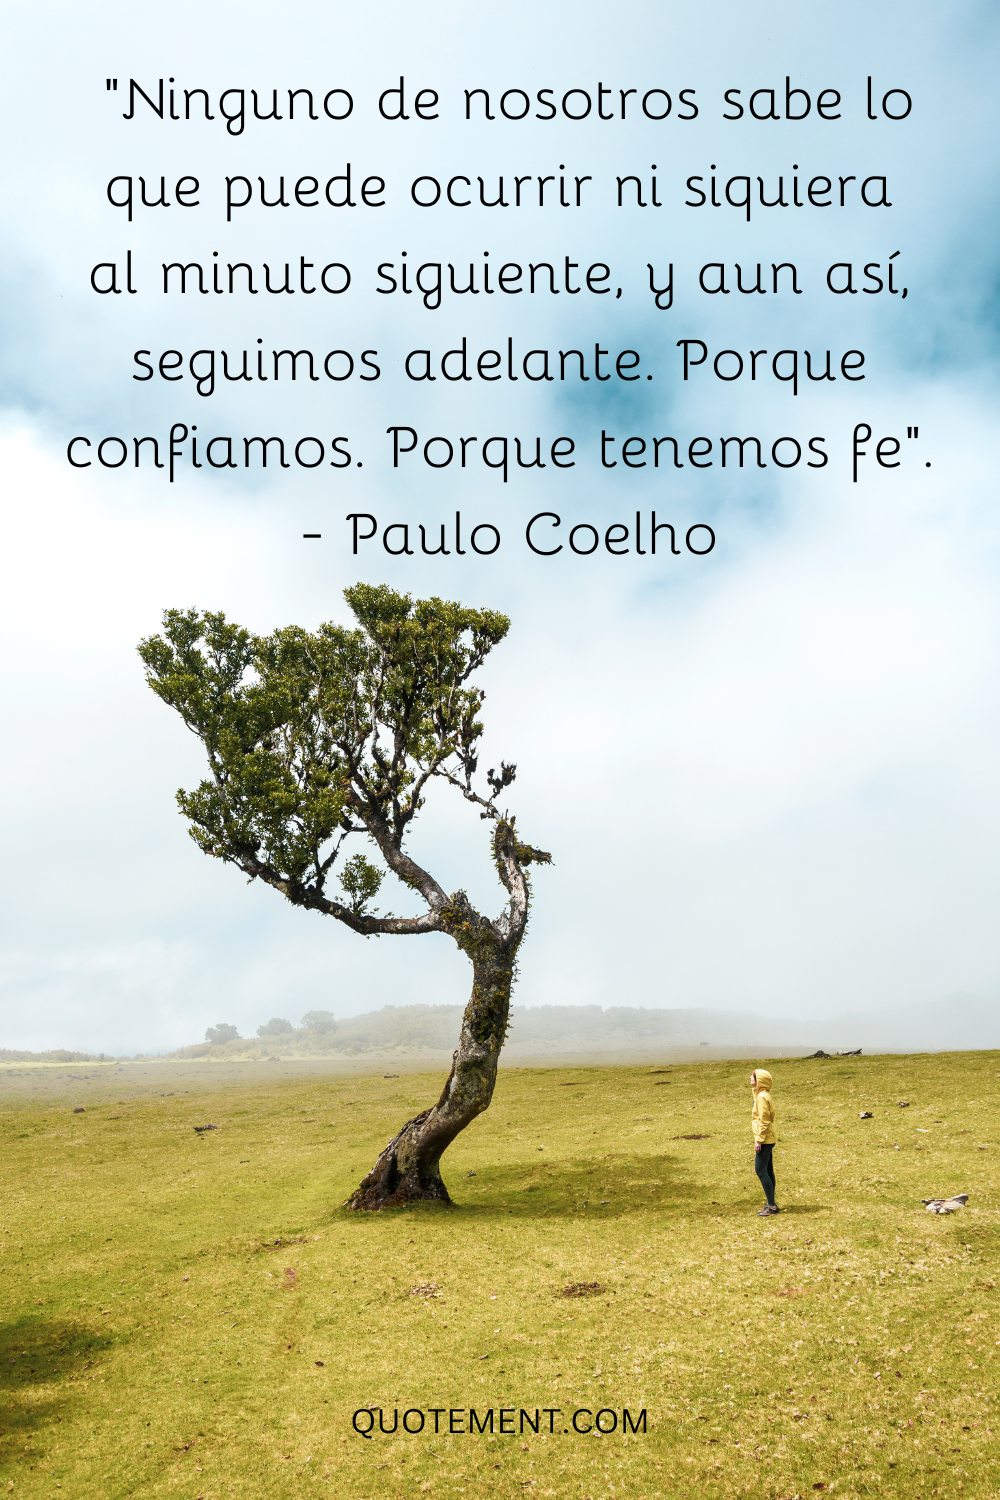 "Ninguno de nosotros sabe lo que puede ocurrir ni siquiera al minuto siguiente, y aun así, seguimos adelante. Porque confiamos. Porque tenemos fe". - Paulo Coelho